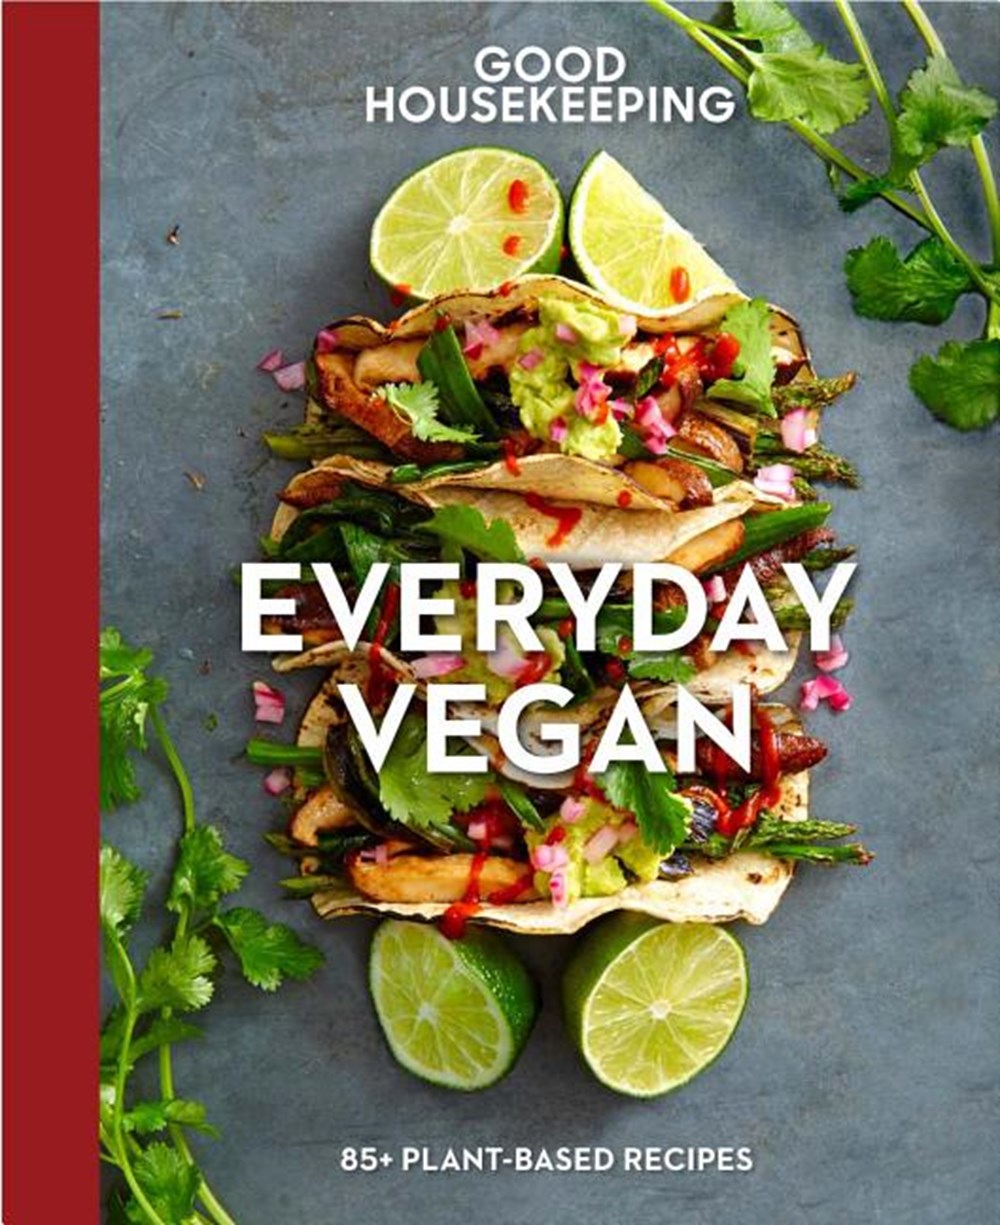 Good Housekeeping Everyday Vegan, Volume 16 in Hardcover by Good